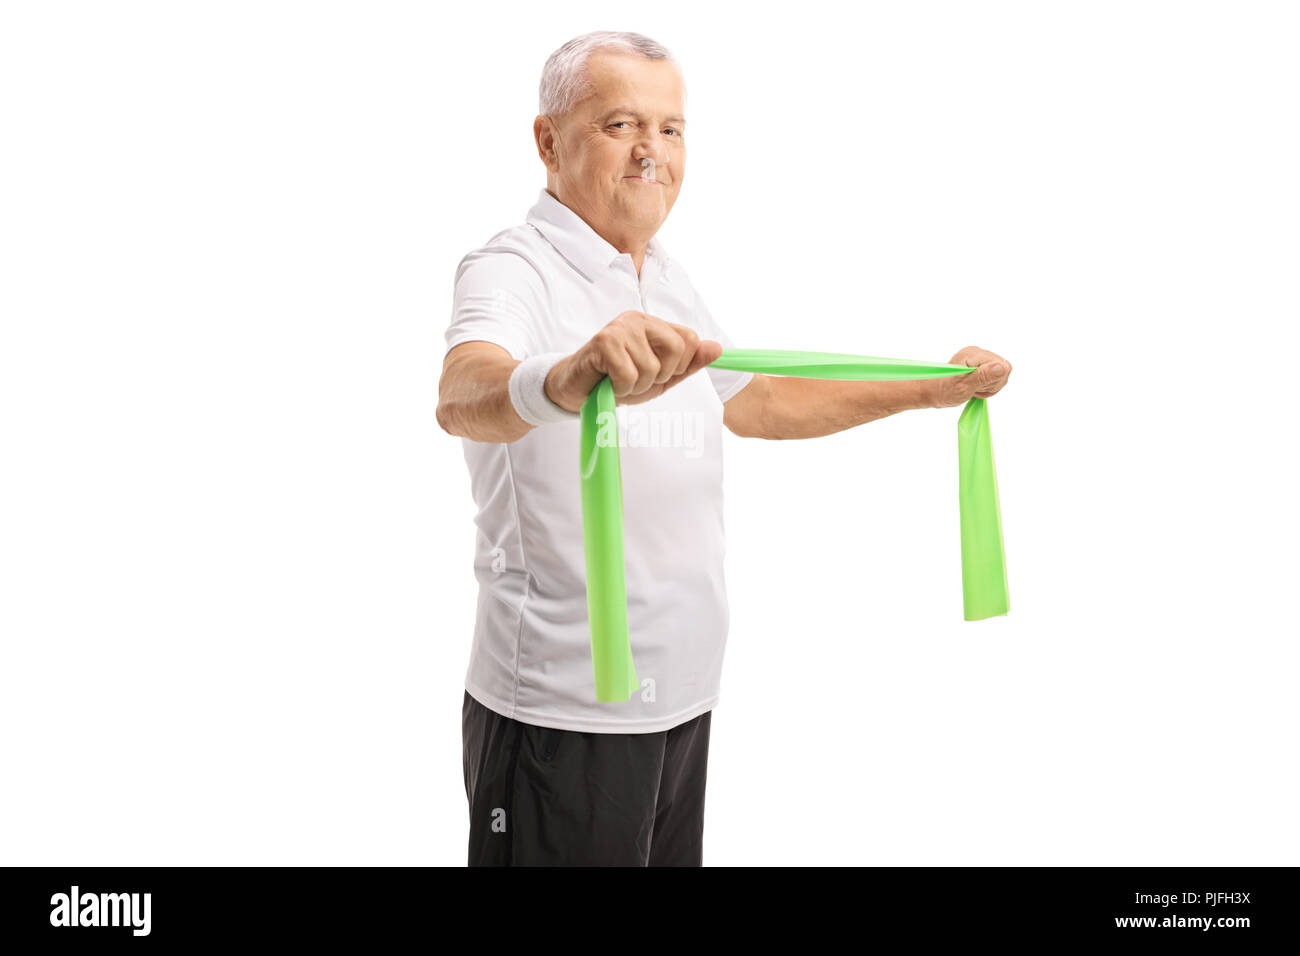 Reifer mann Training mit einem Gummiband auf weißem Hintergrund Stockfoto